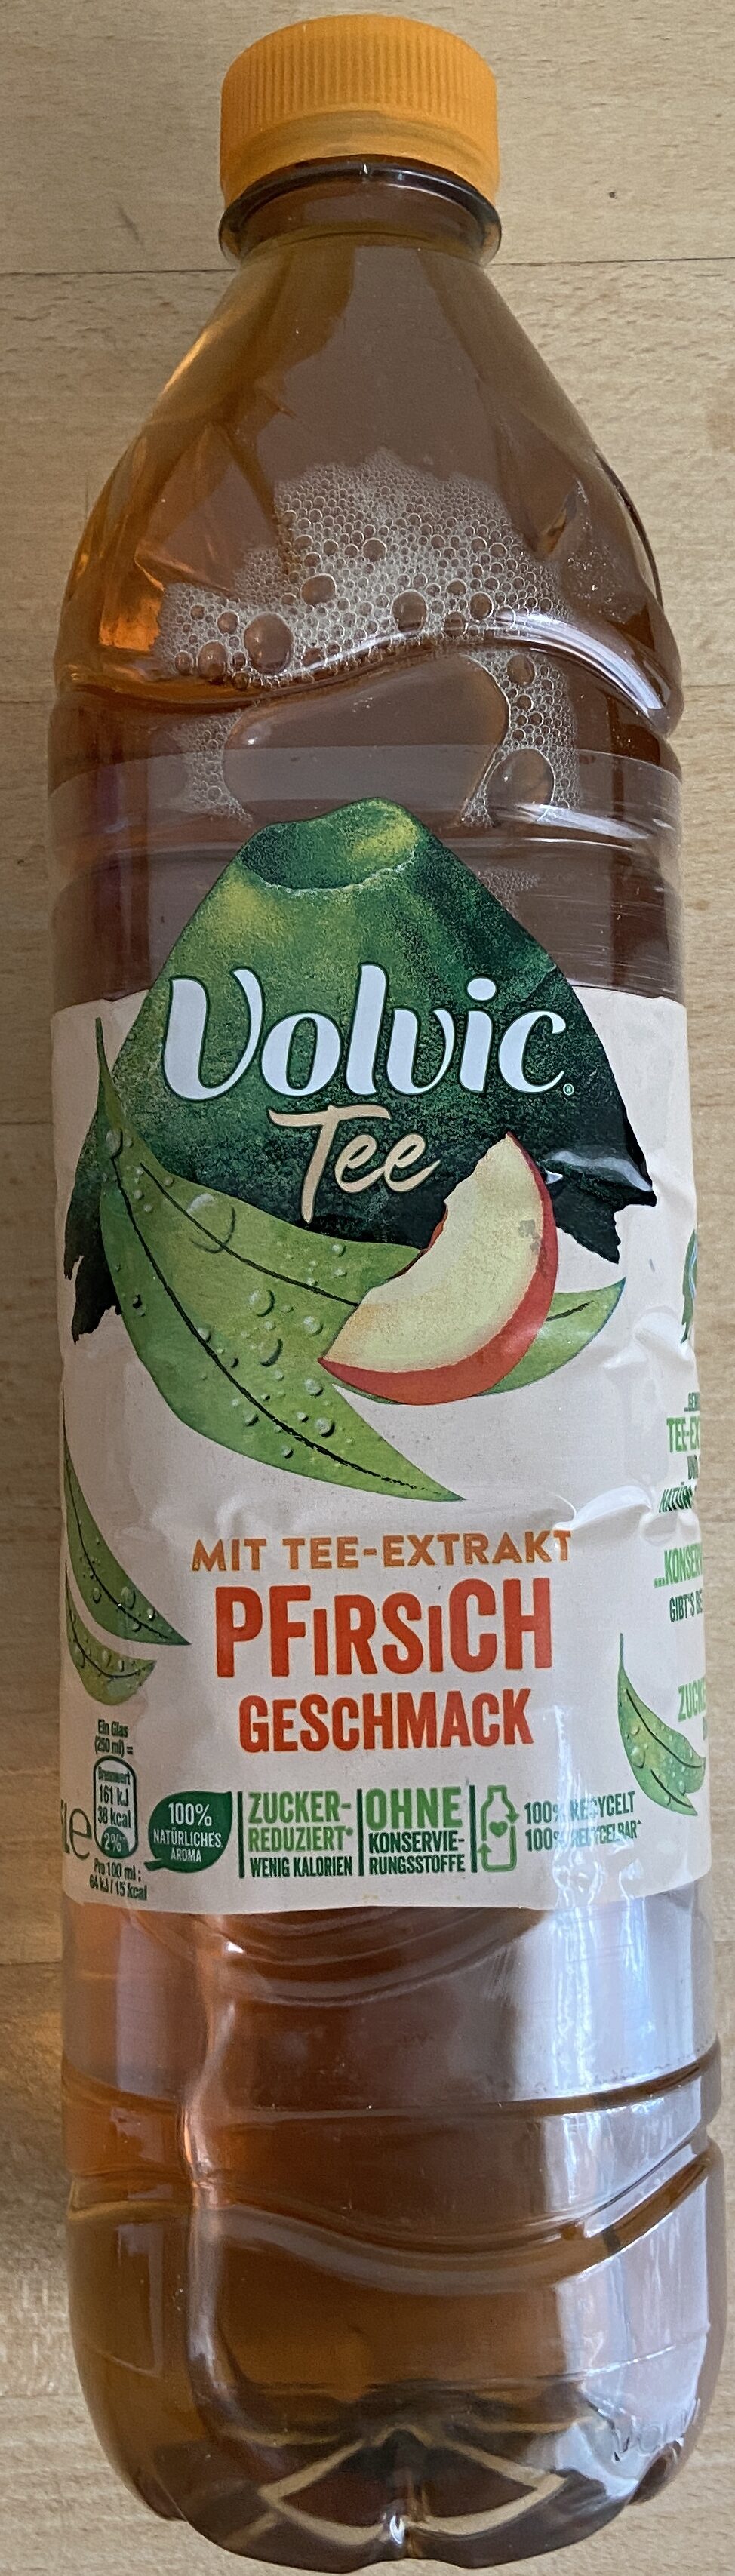 Volvic Tee Pfirsich - Produkt